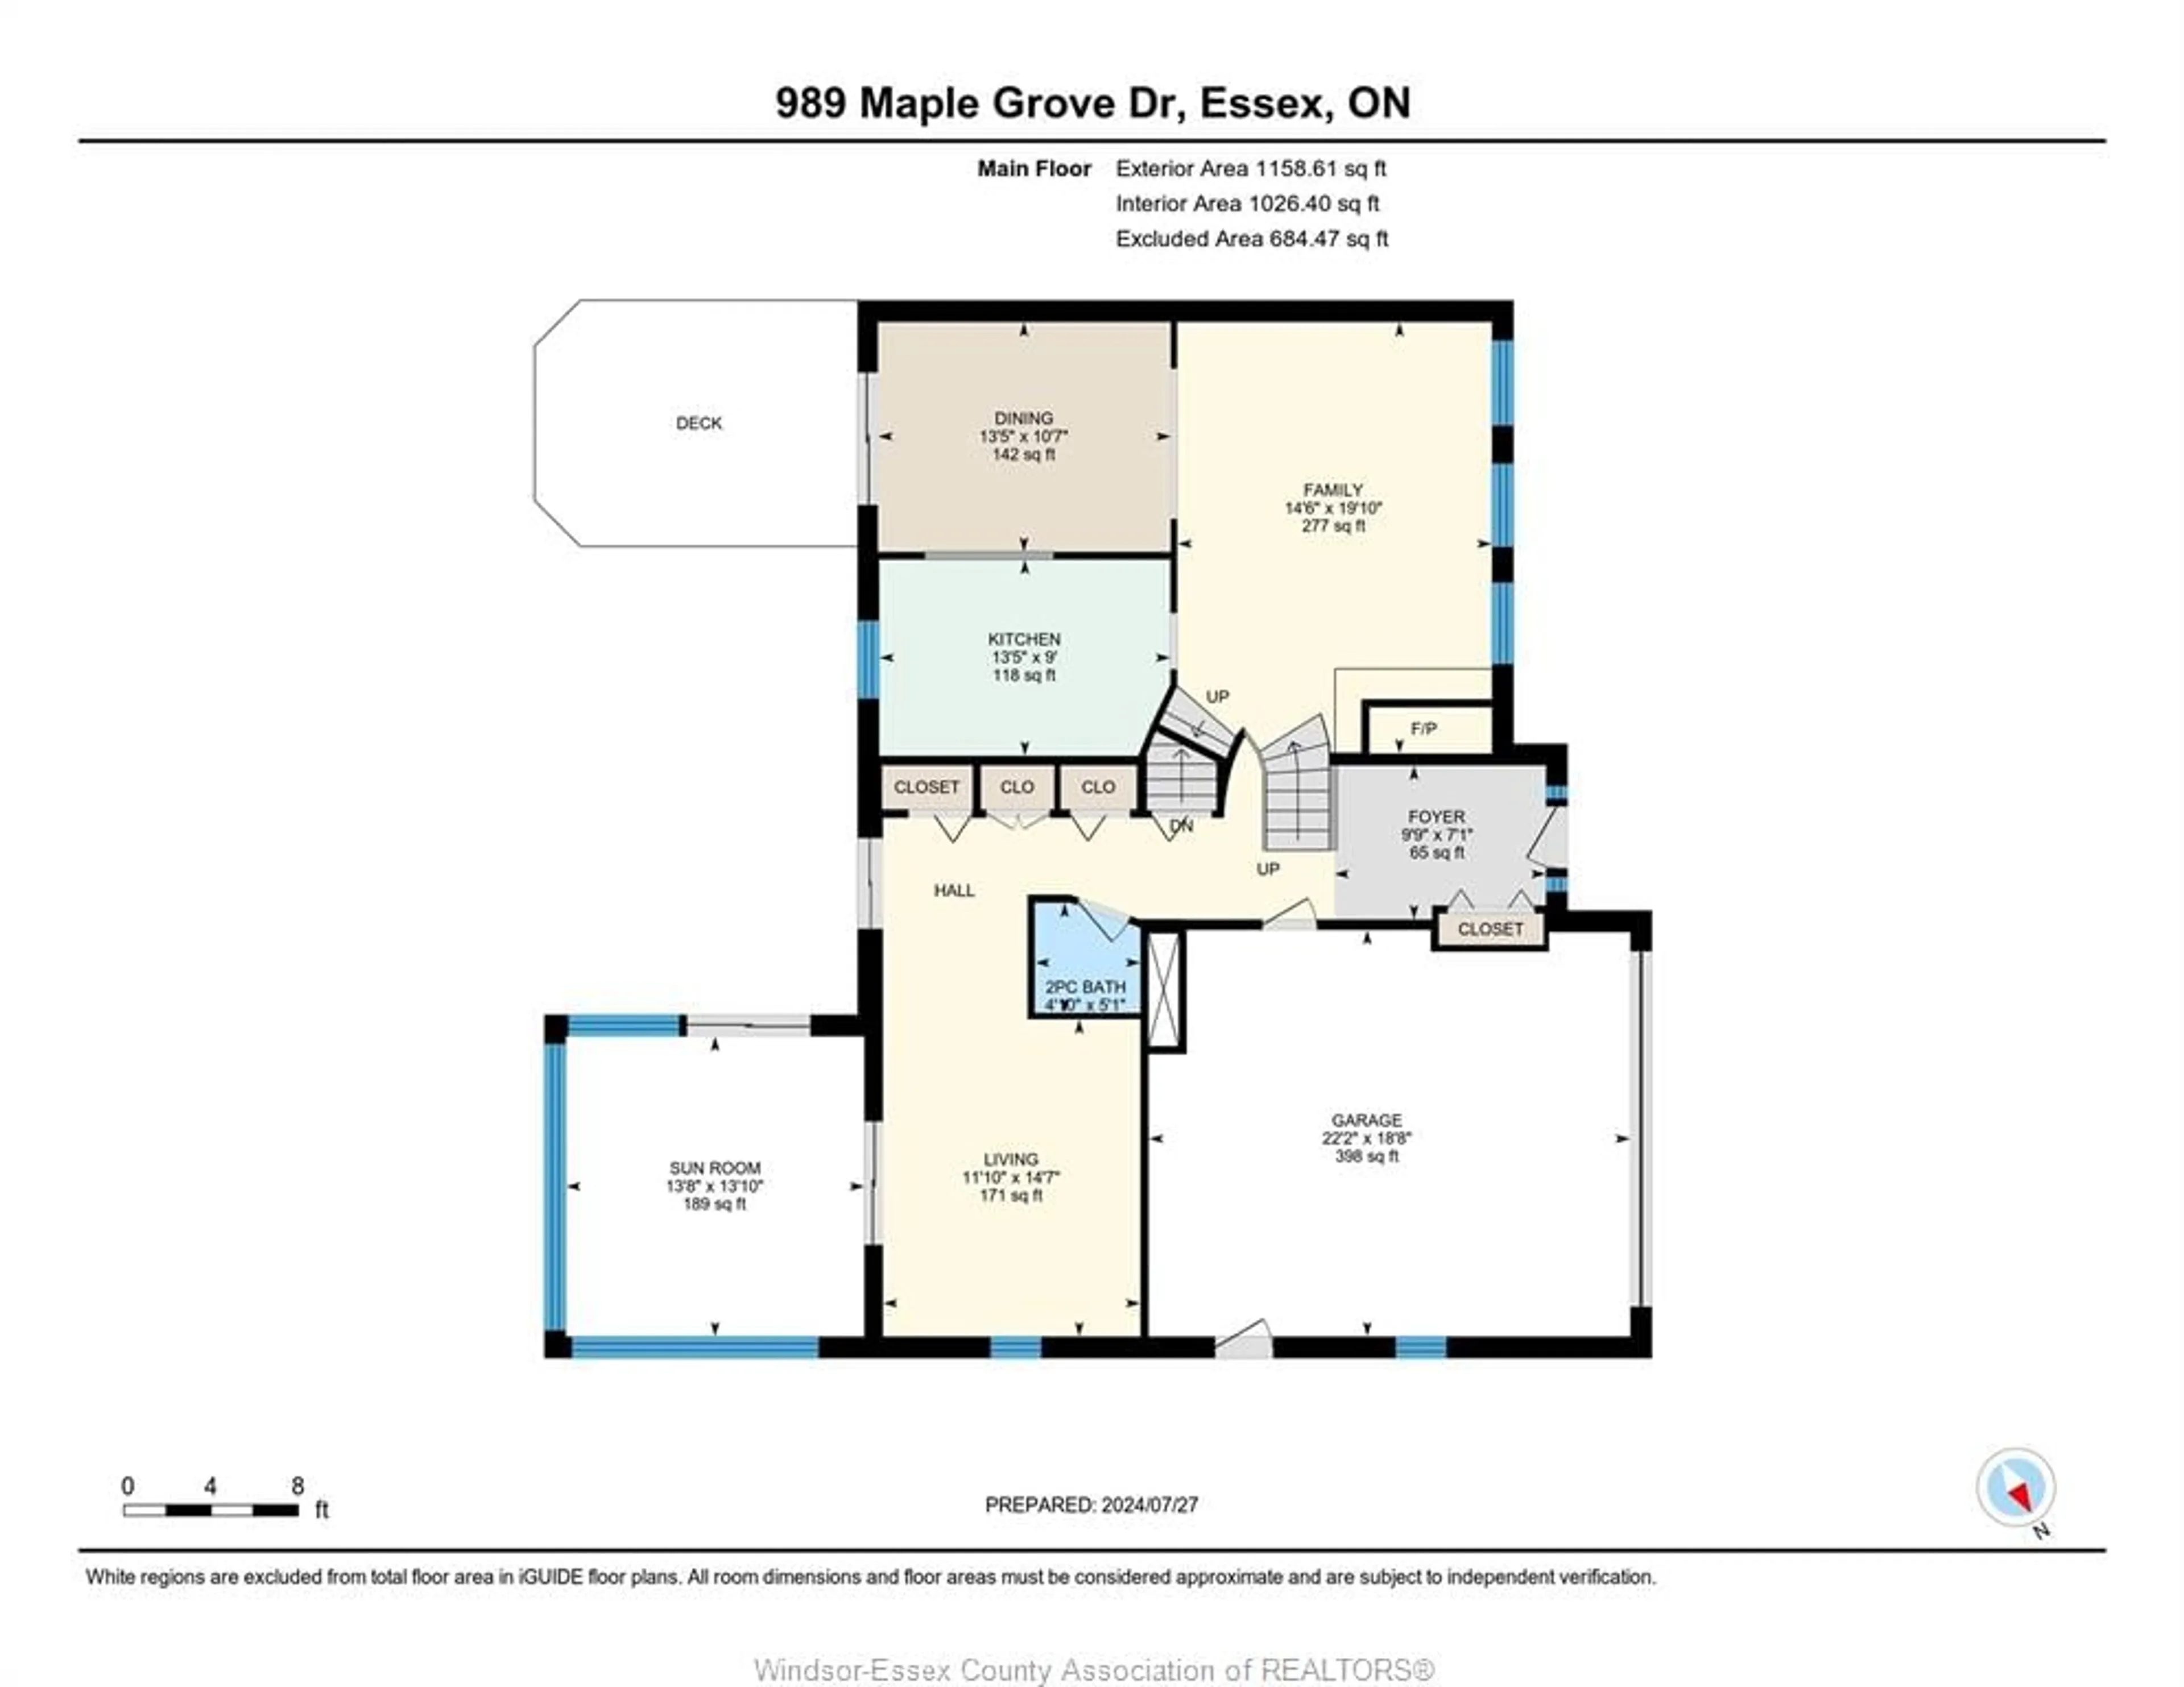 Floor plan for 989 Maple Grove Dr, Harrow Ontario N0R 1G0